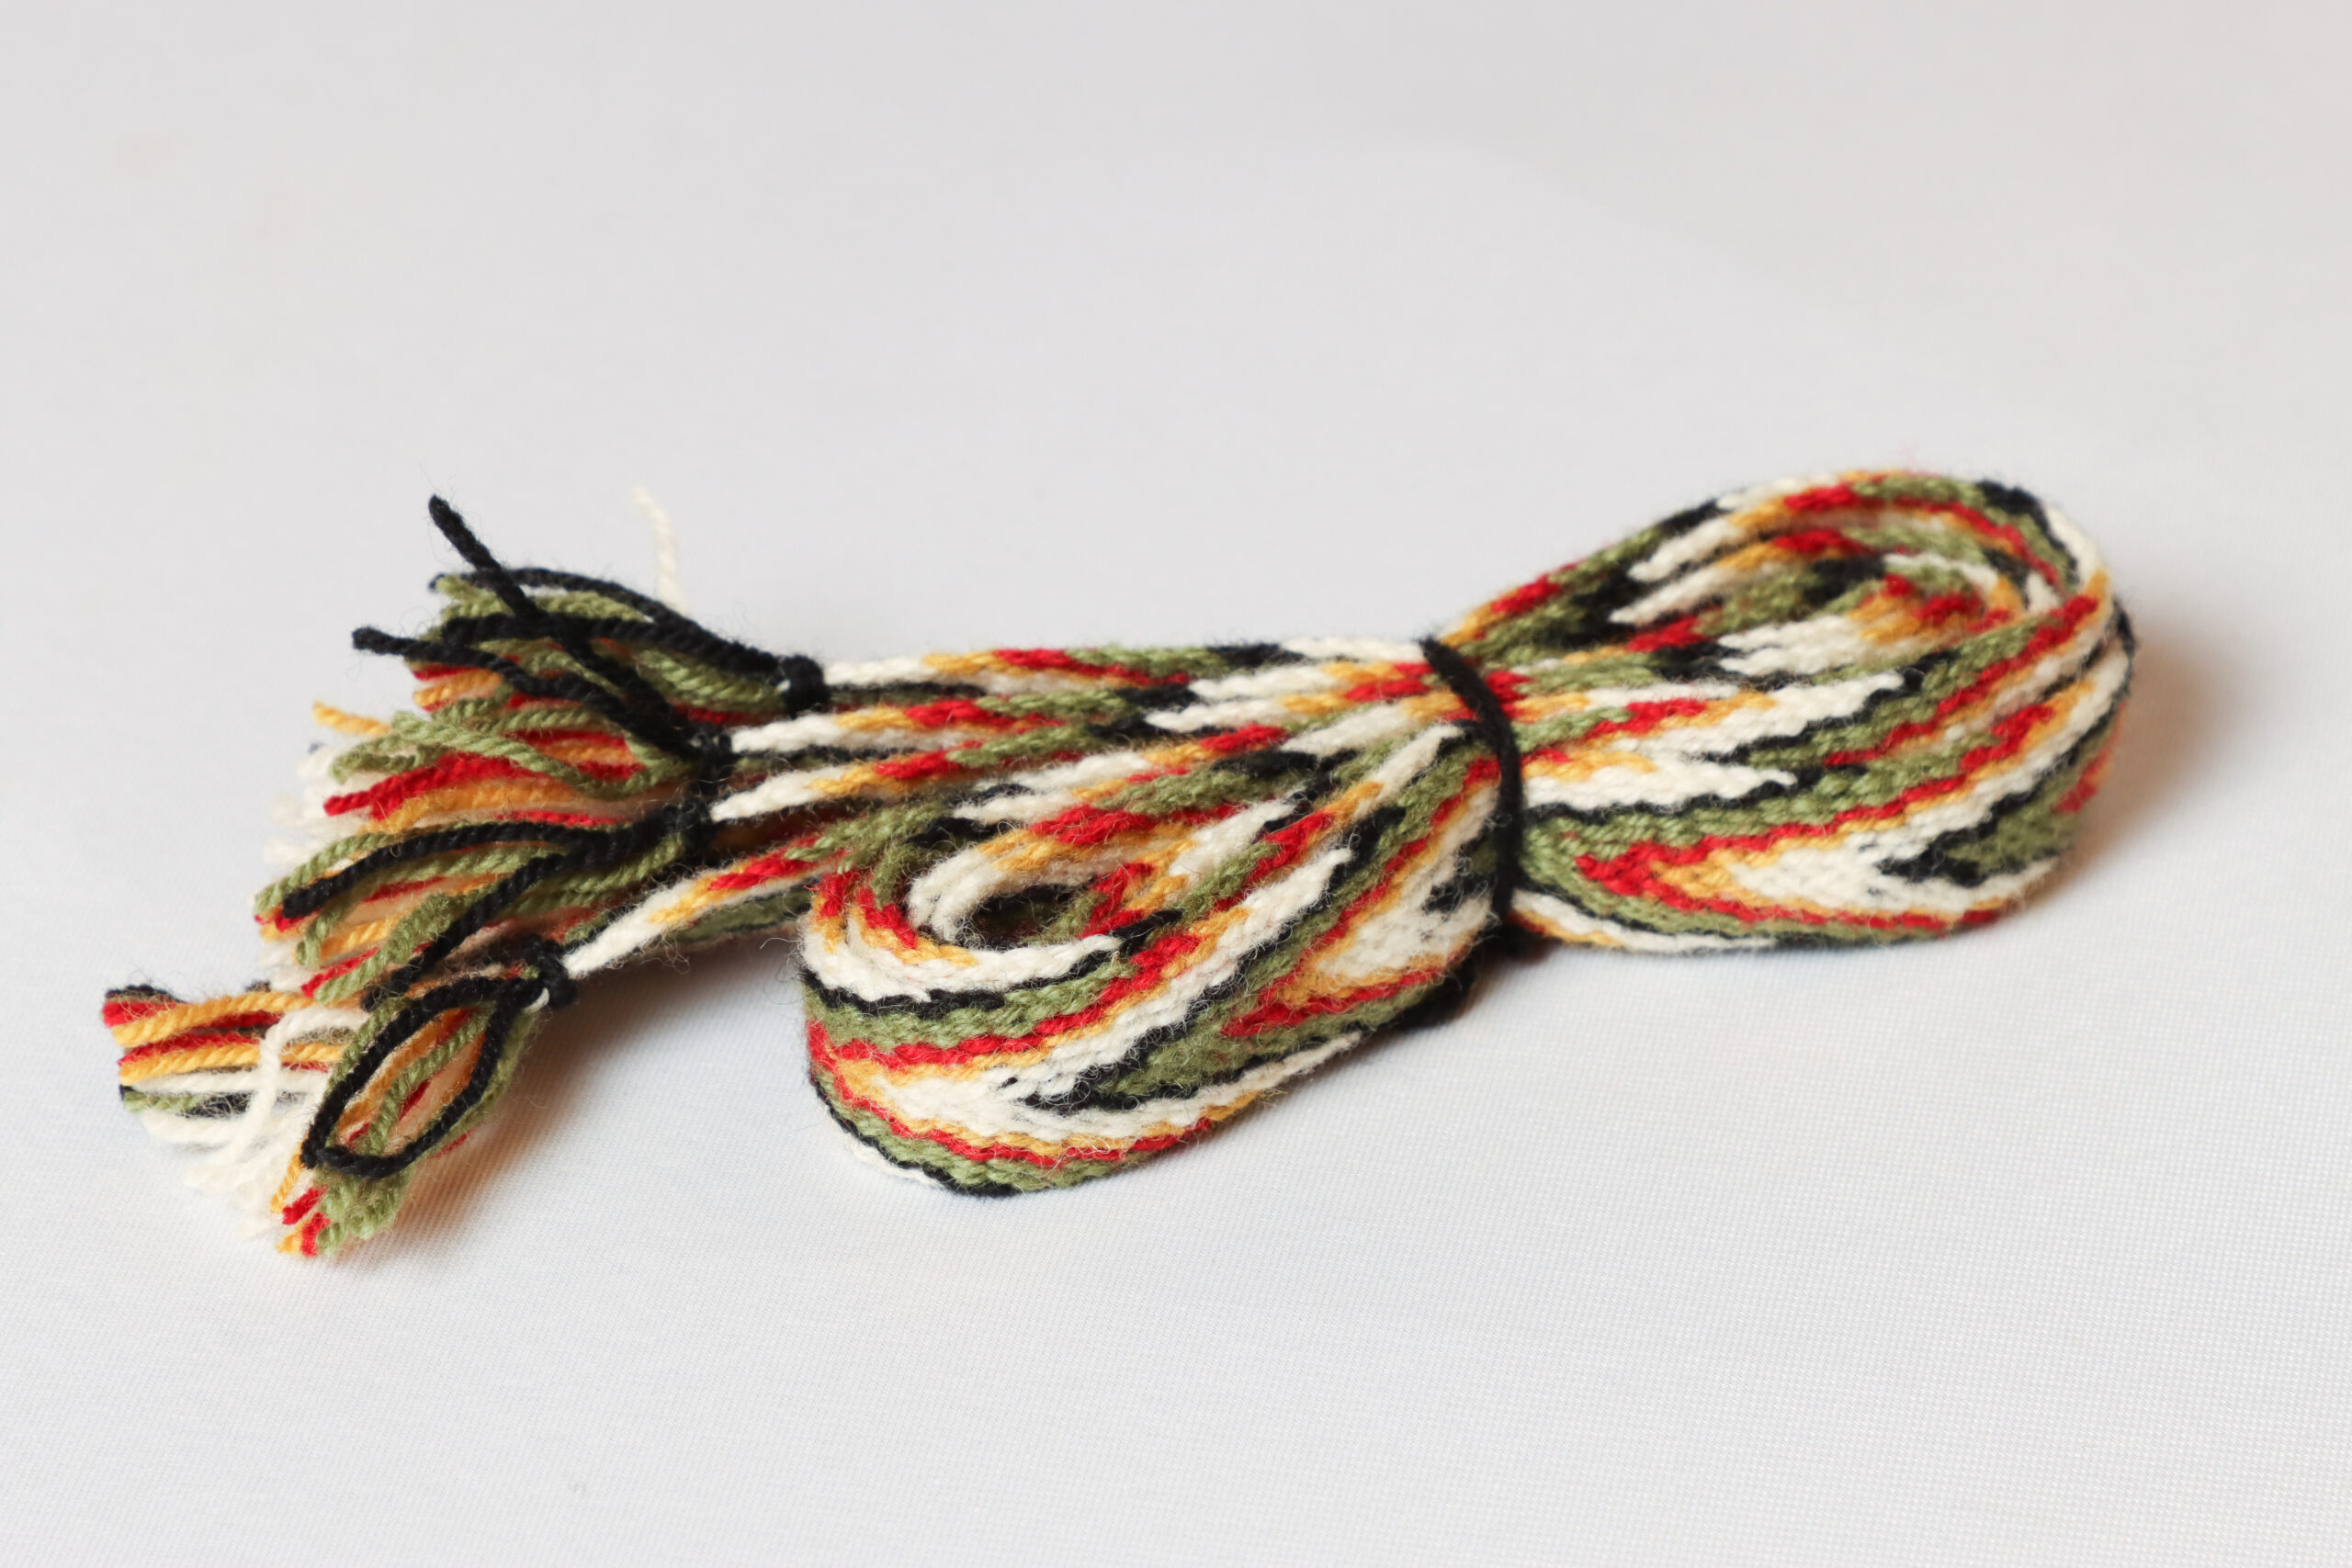 Sokkebånd til bunad fra Rogaland i fargene rødt, grønt, gult, svart og hvitt.